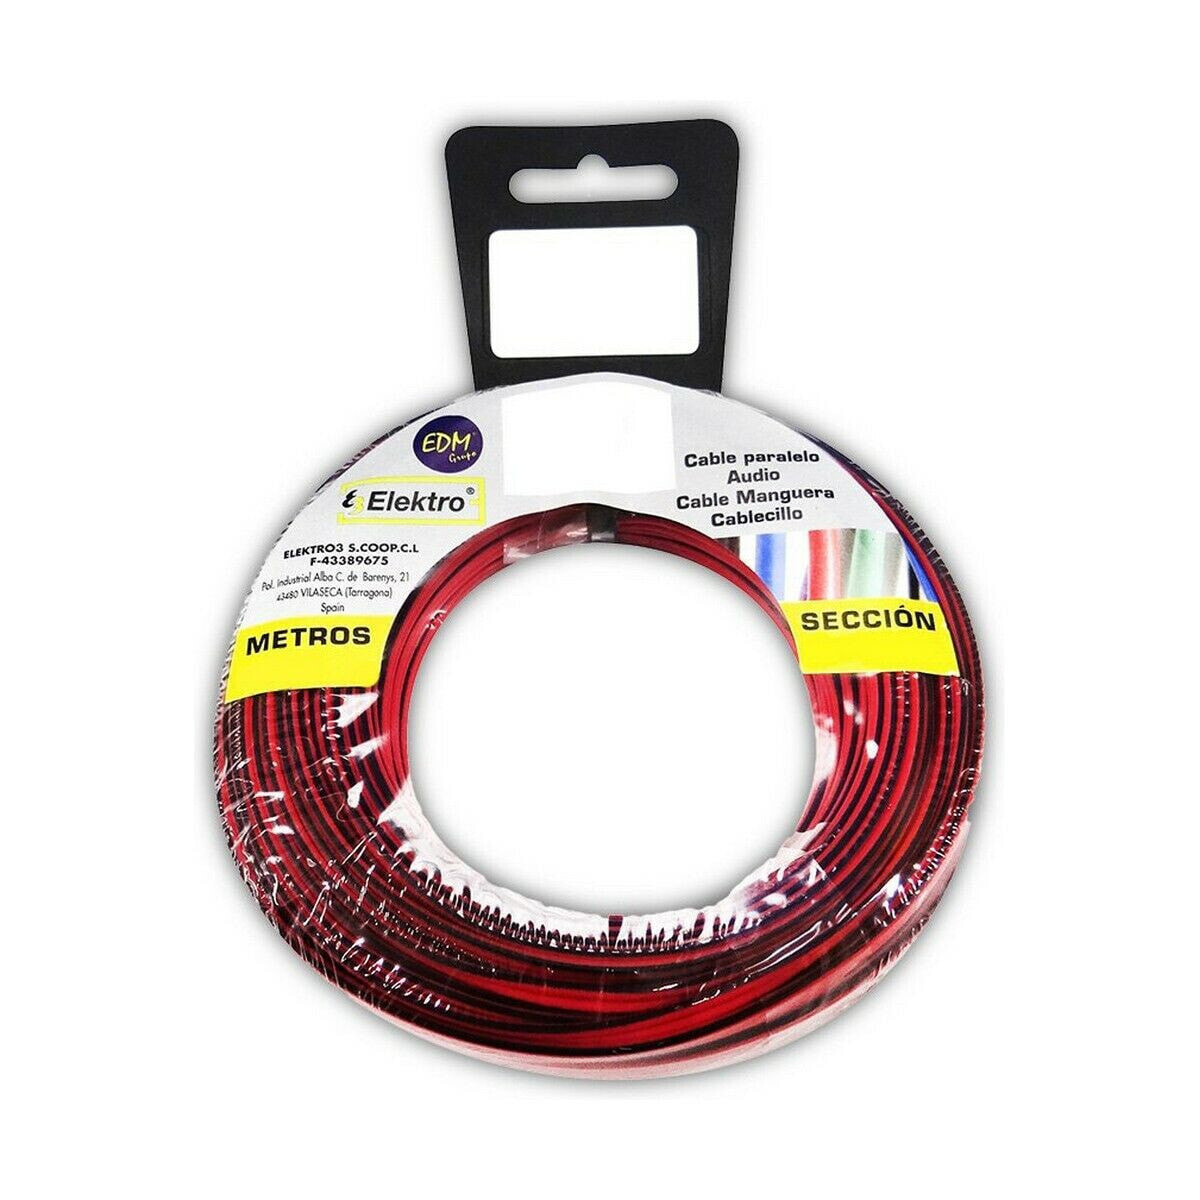 Аудио кабель EDM 2 x 1,5 mm Красный/Черный 5 m